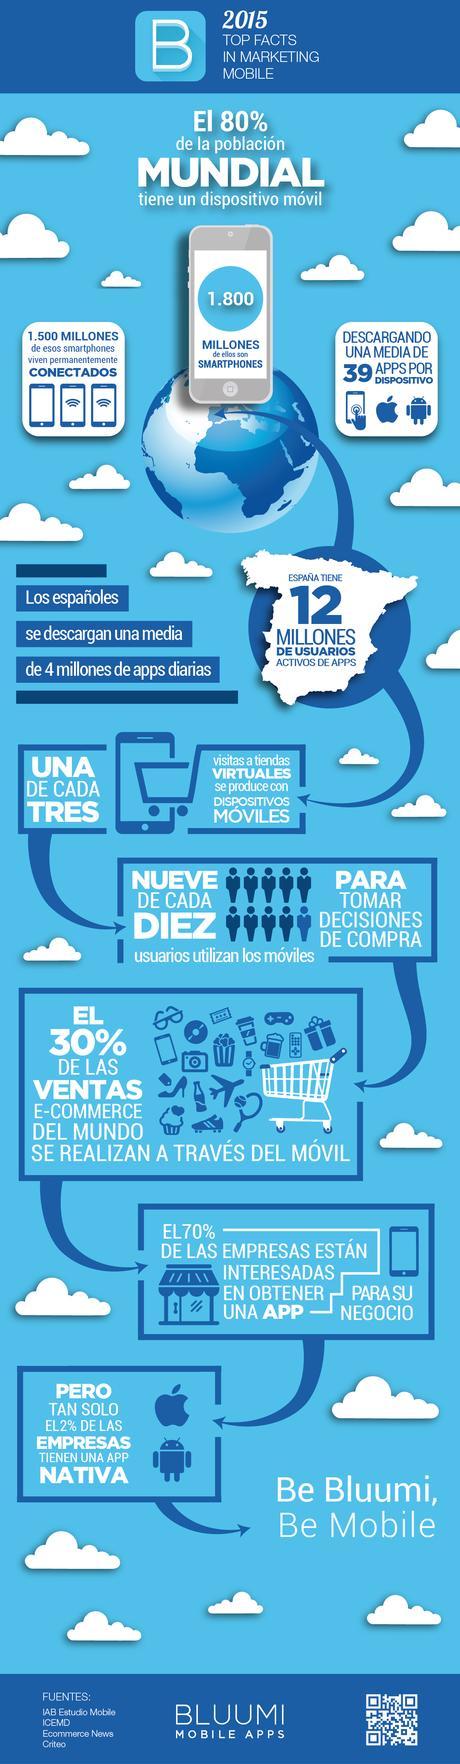 Infografía Mobile Apps 2015 Bluumi